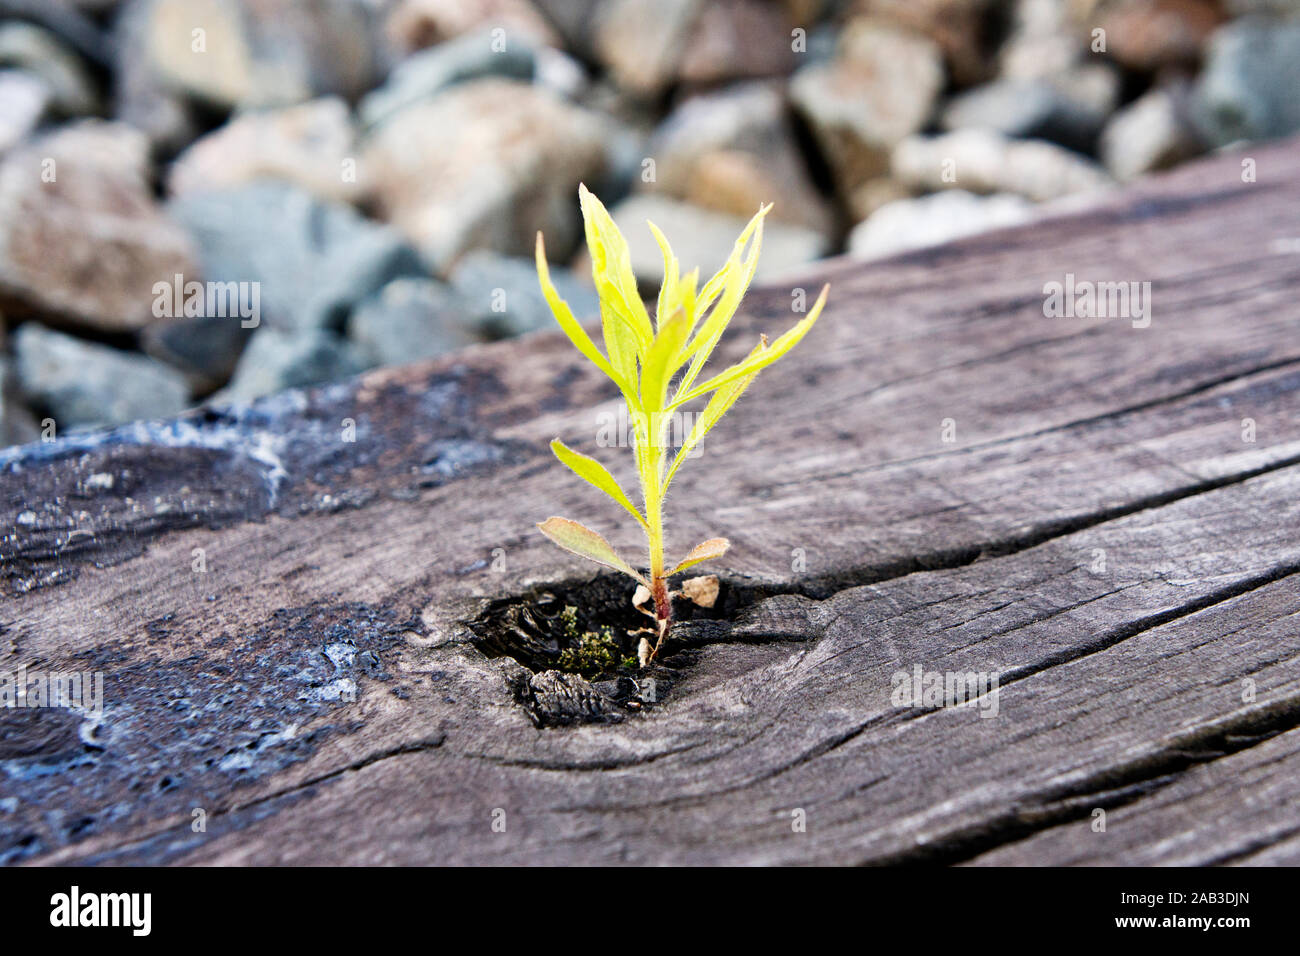 Eine Pflanze wächst in einer Bahnschwelle |A plant growing in a railway sleeper| Stock Photo